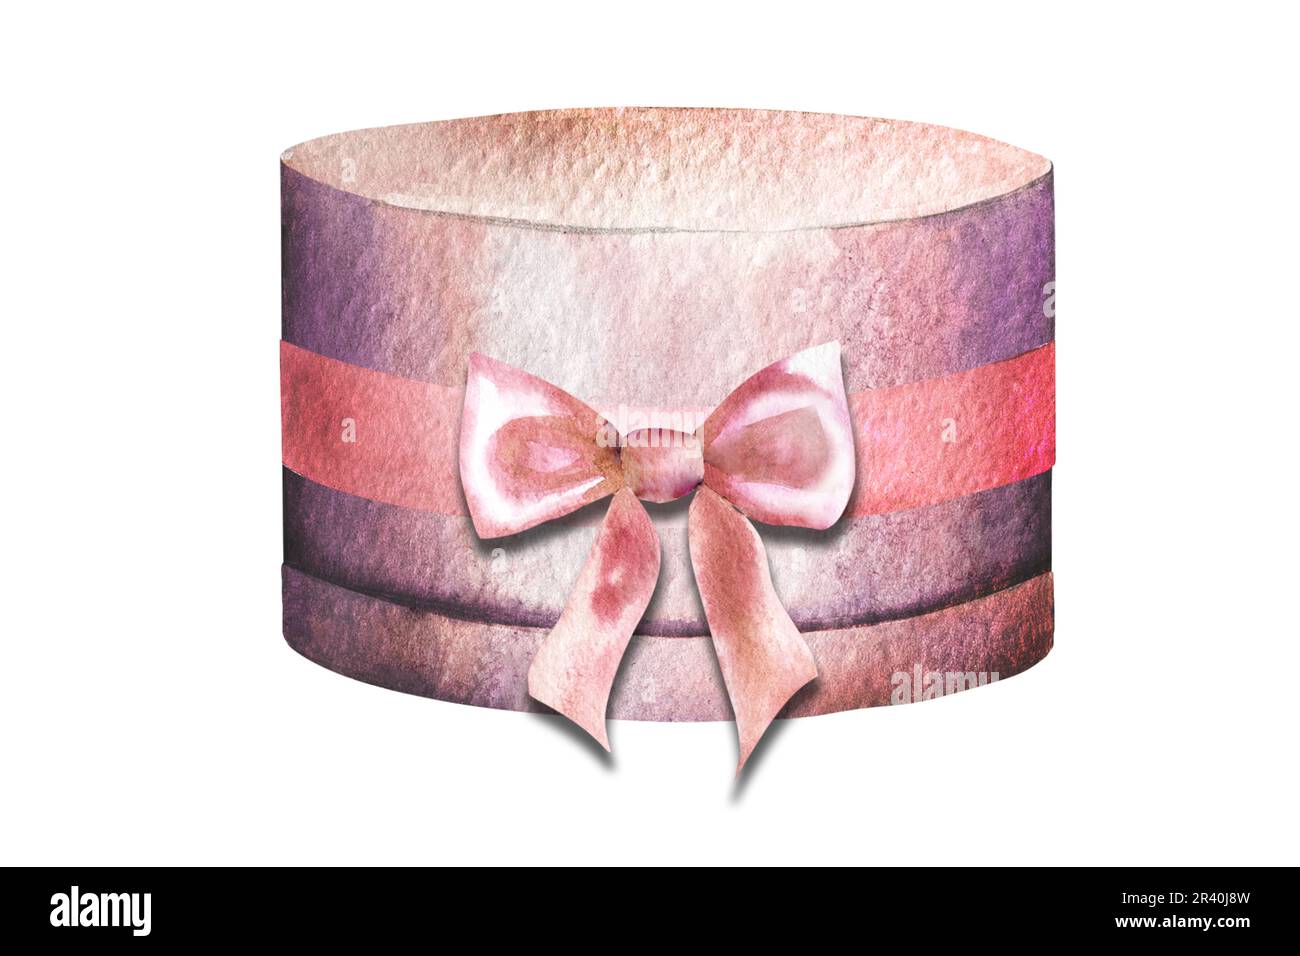 Illustration aquarelle d'une magnifique boîte cadeau ronde rose avec un noeud sur un fond blanc. Banque D'Images